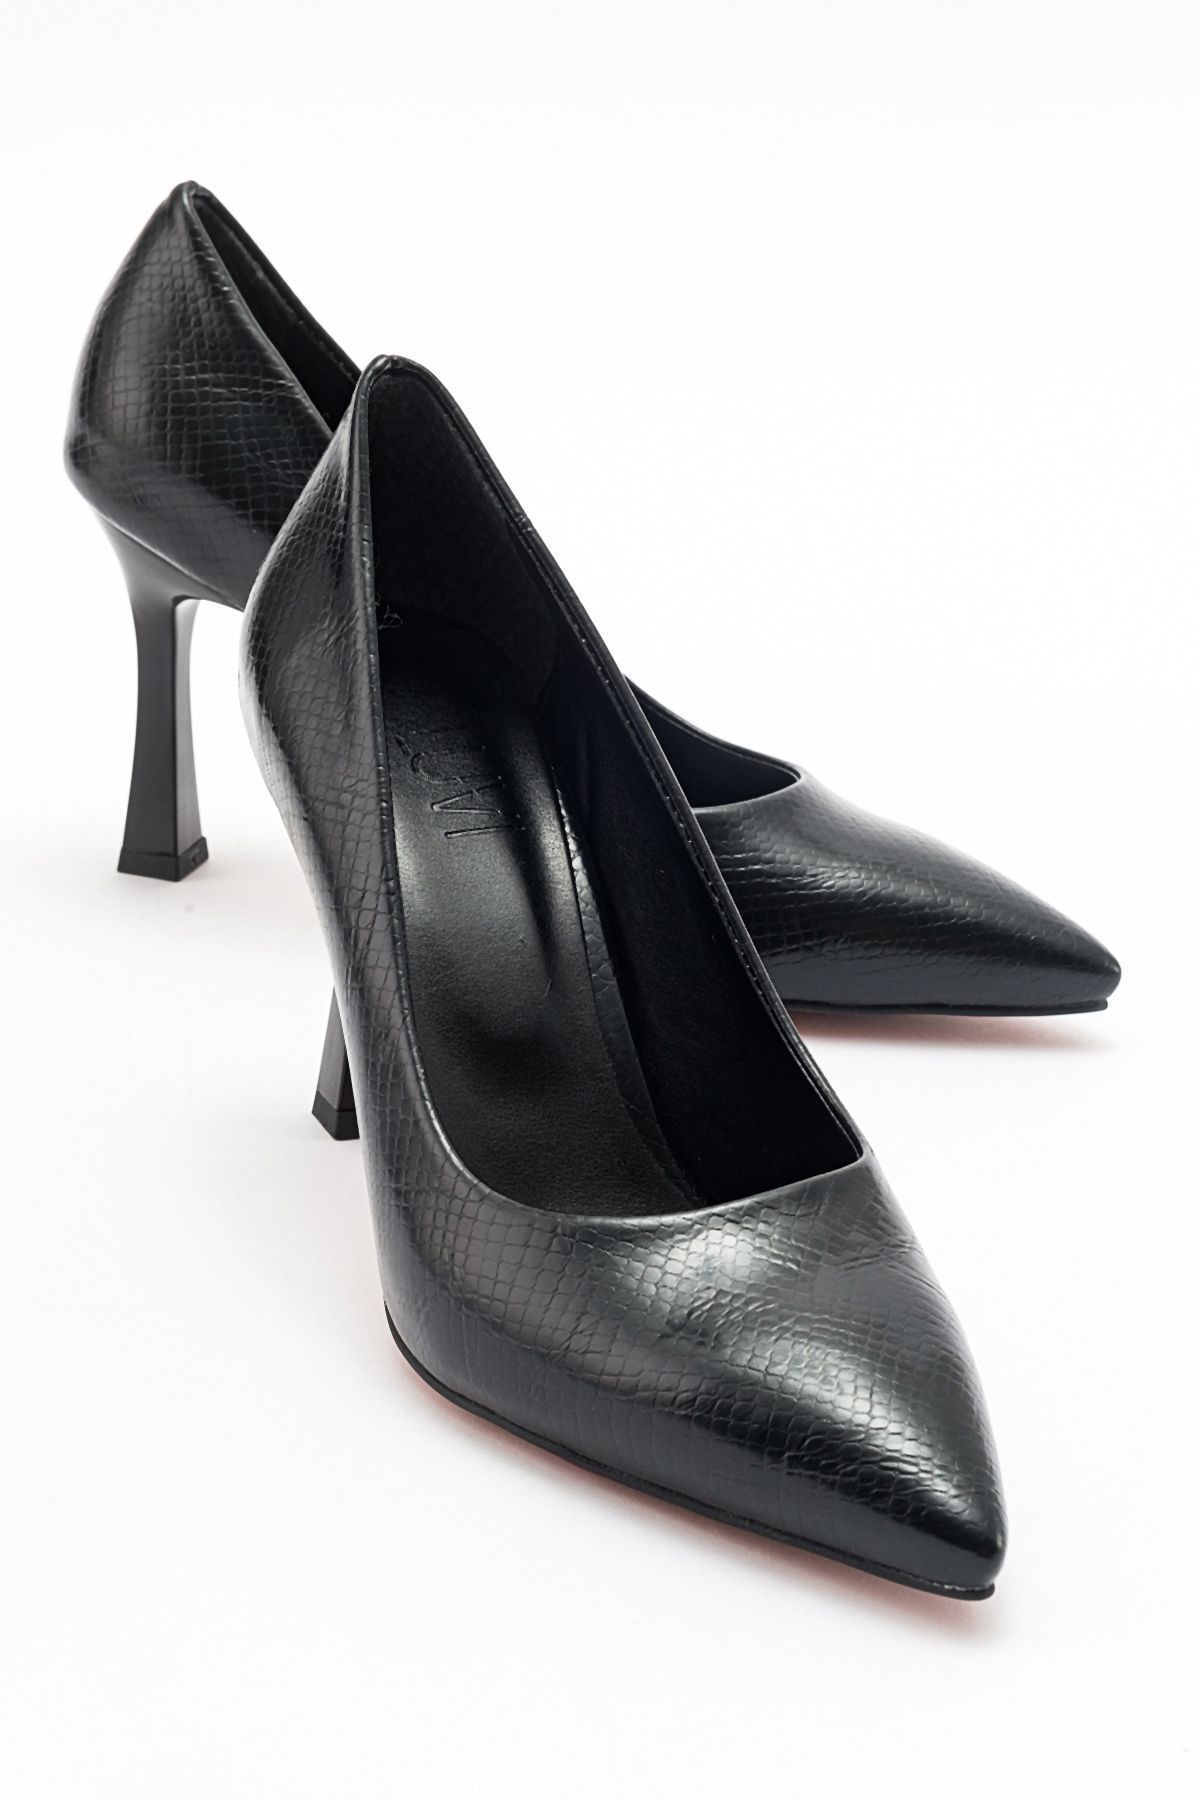 luvishoes FOREST Siyah Baskı Kadın Topuklu Ayakkabı